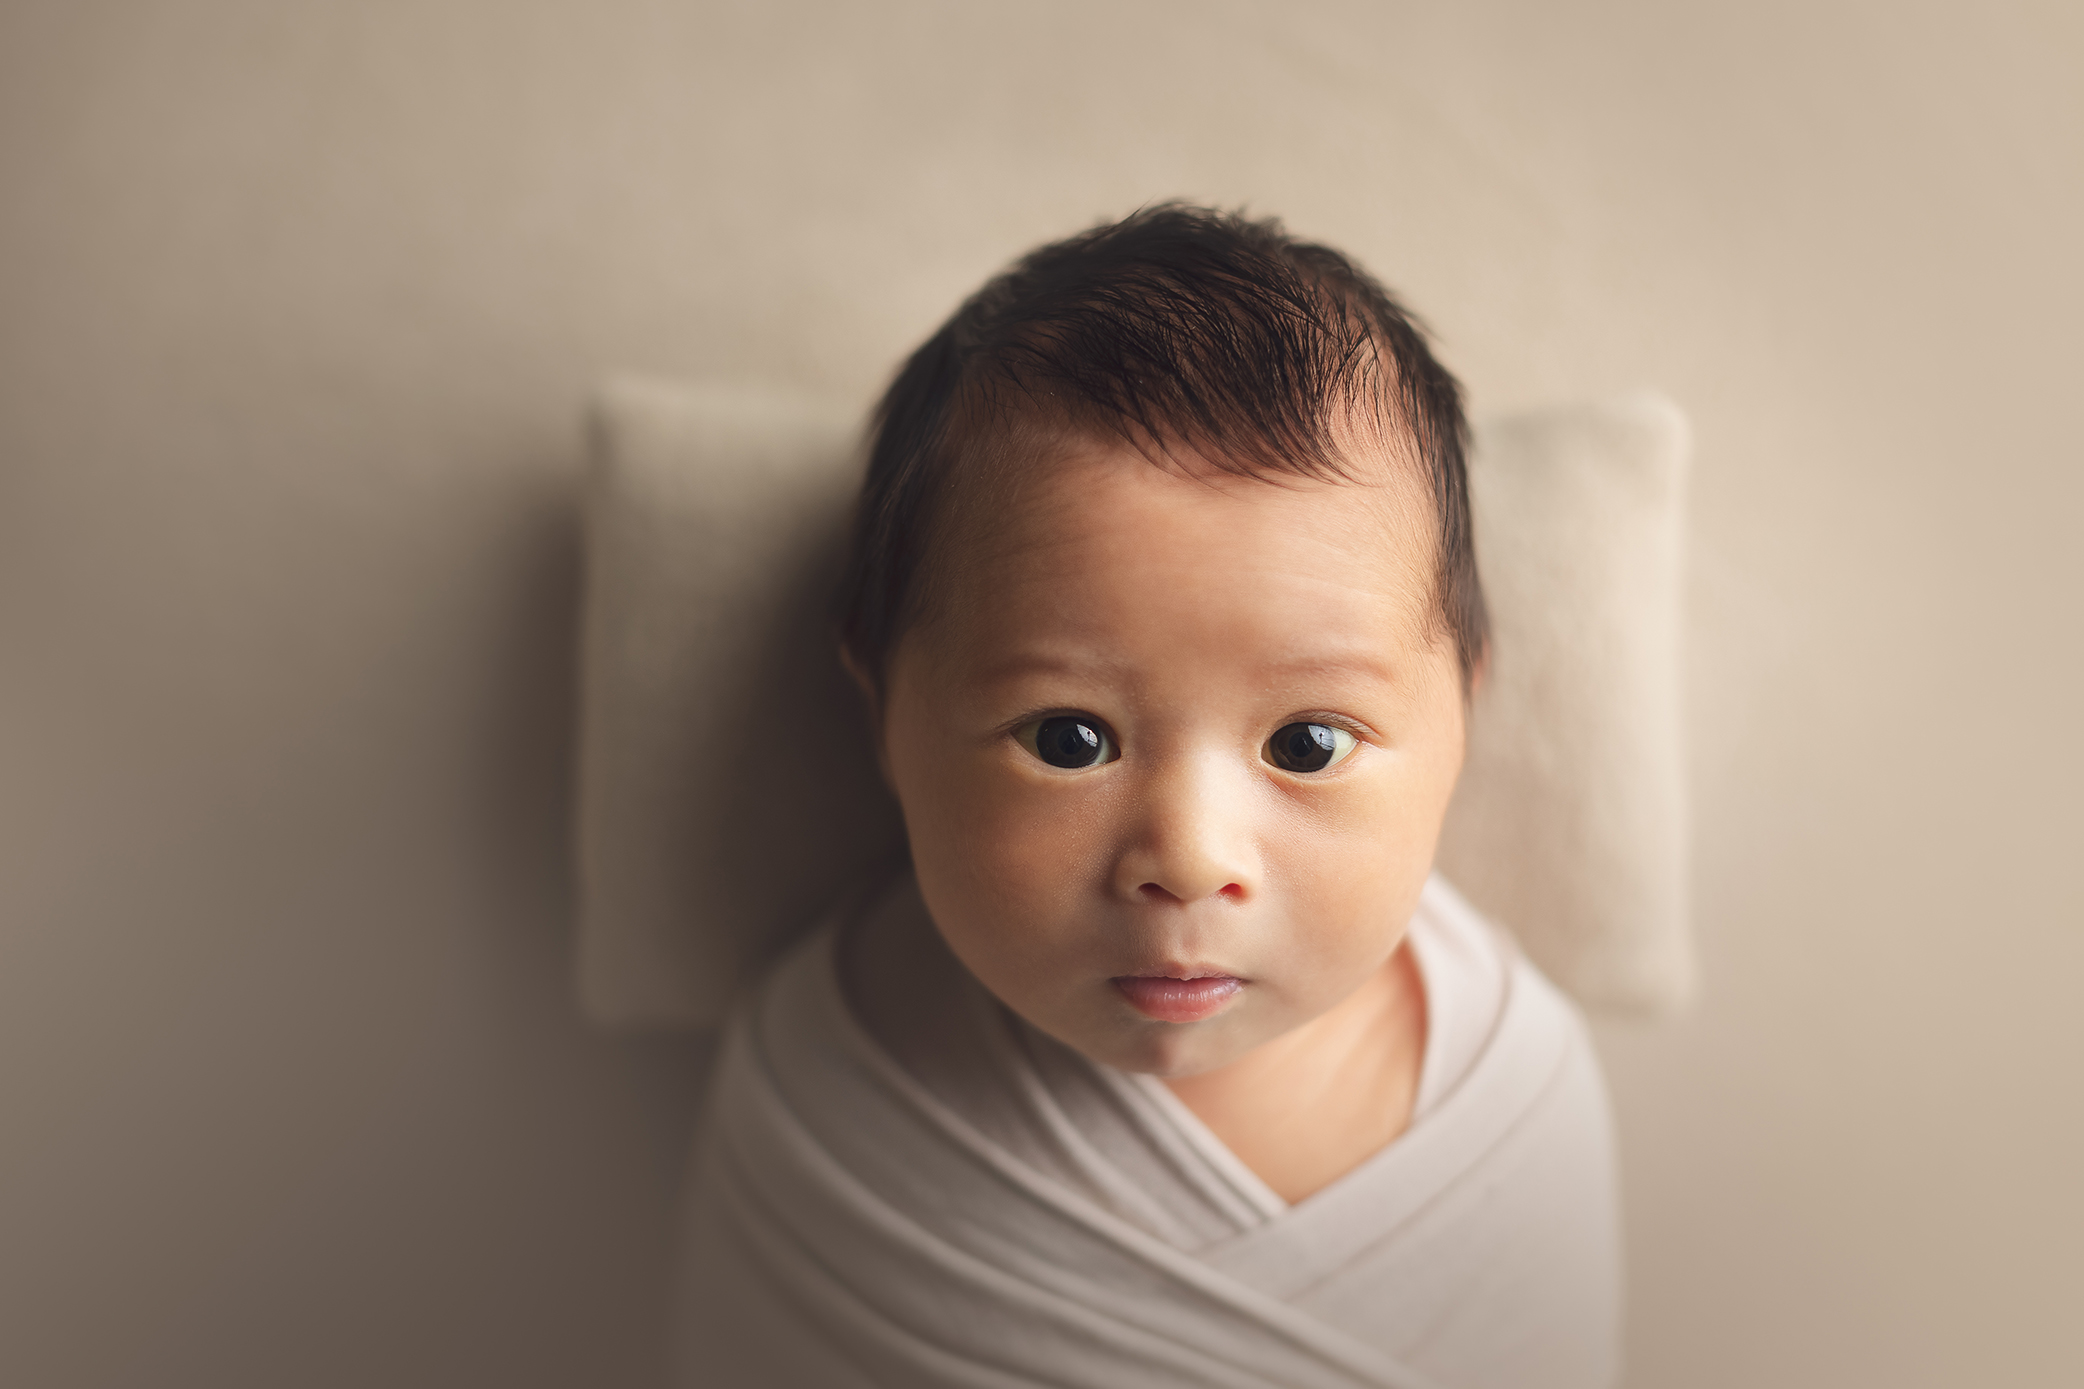 newborn baby boy with open eyes in a cream background